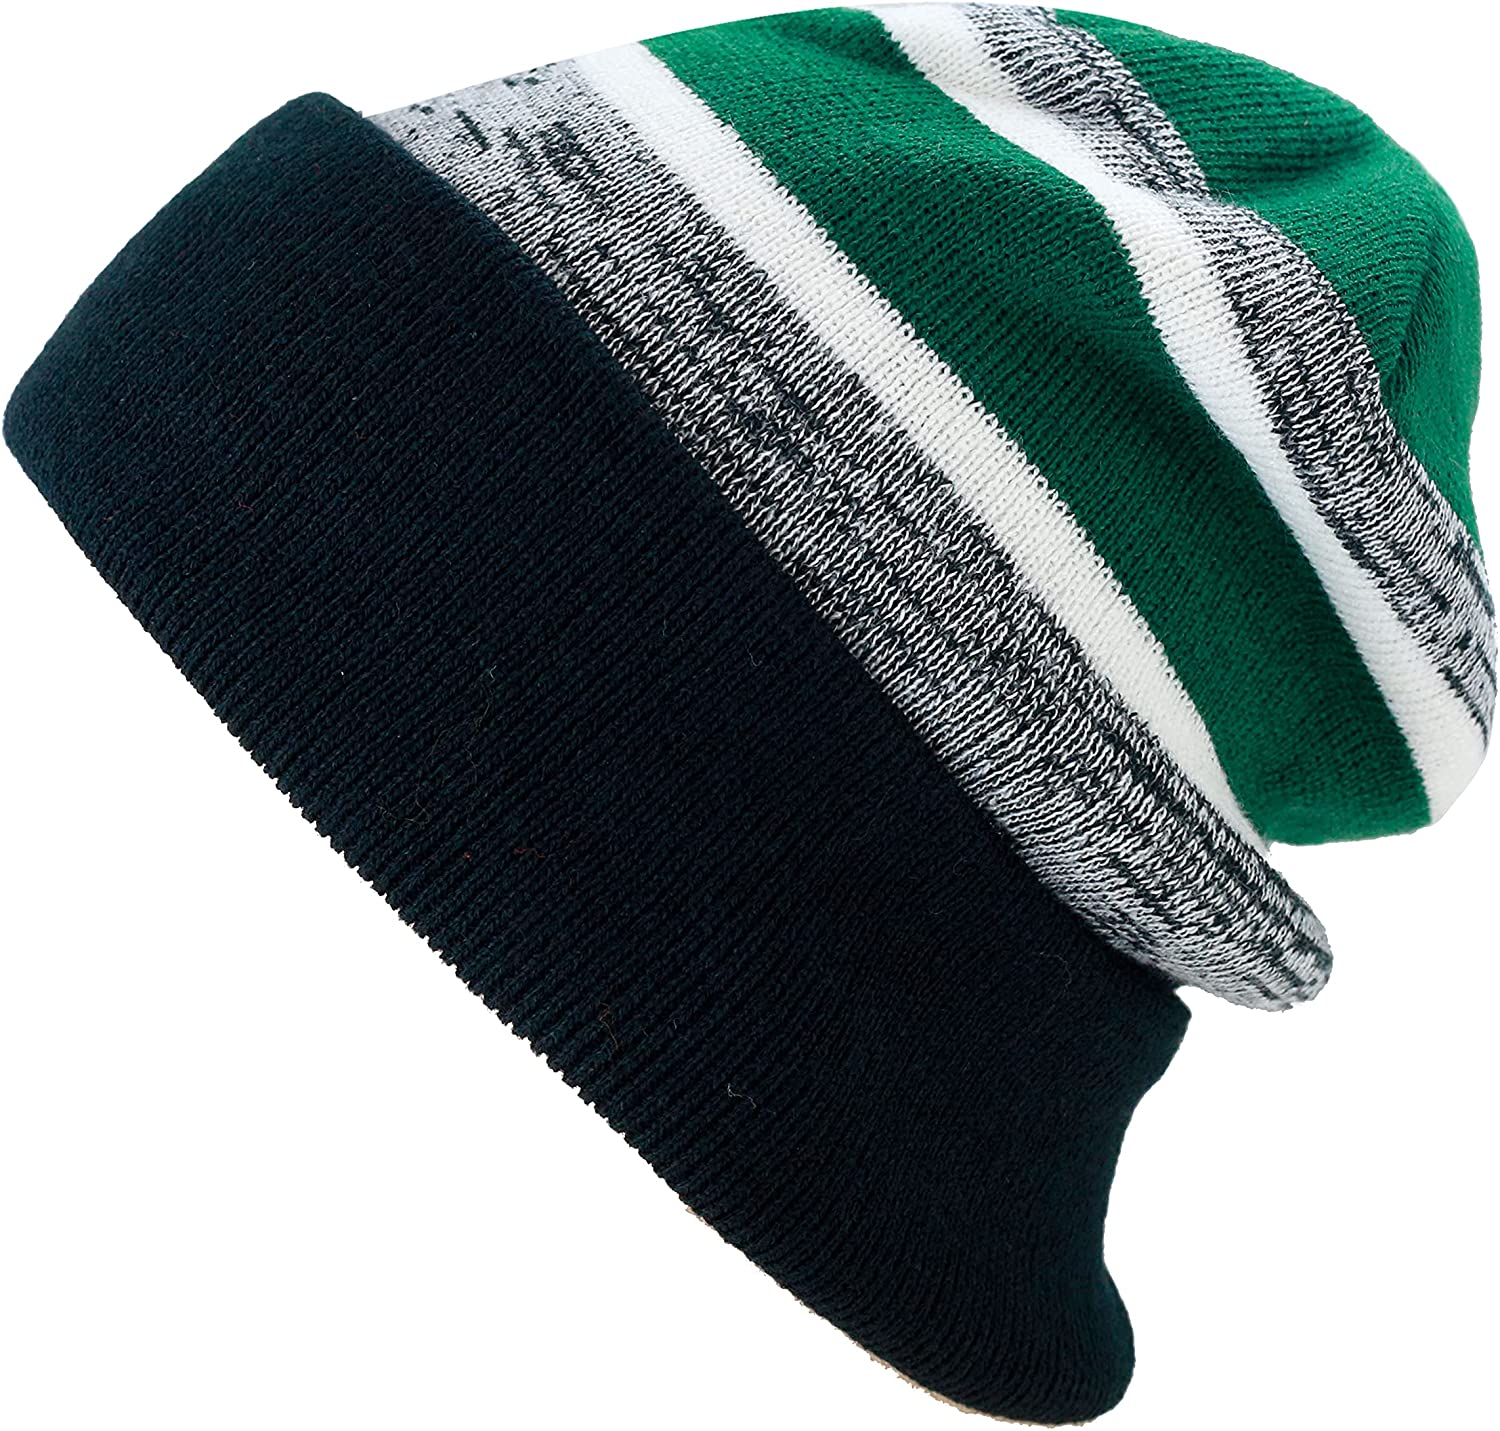 The Hat Depot - Striped Cuffed Pom Pom Knit Beanie